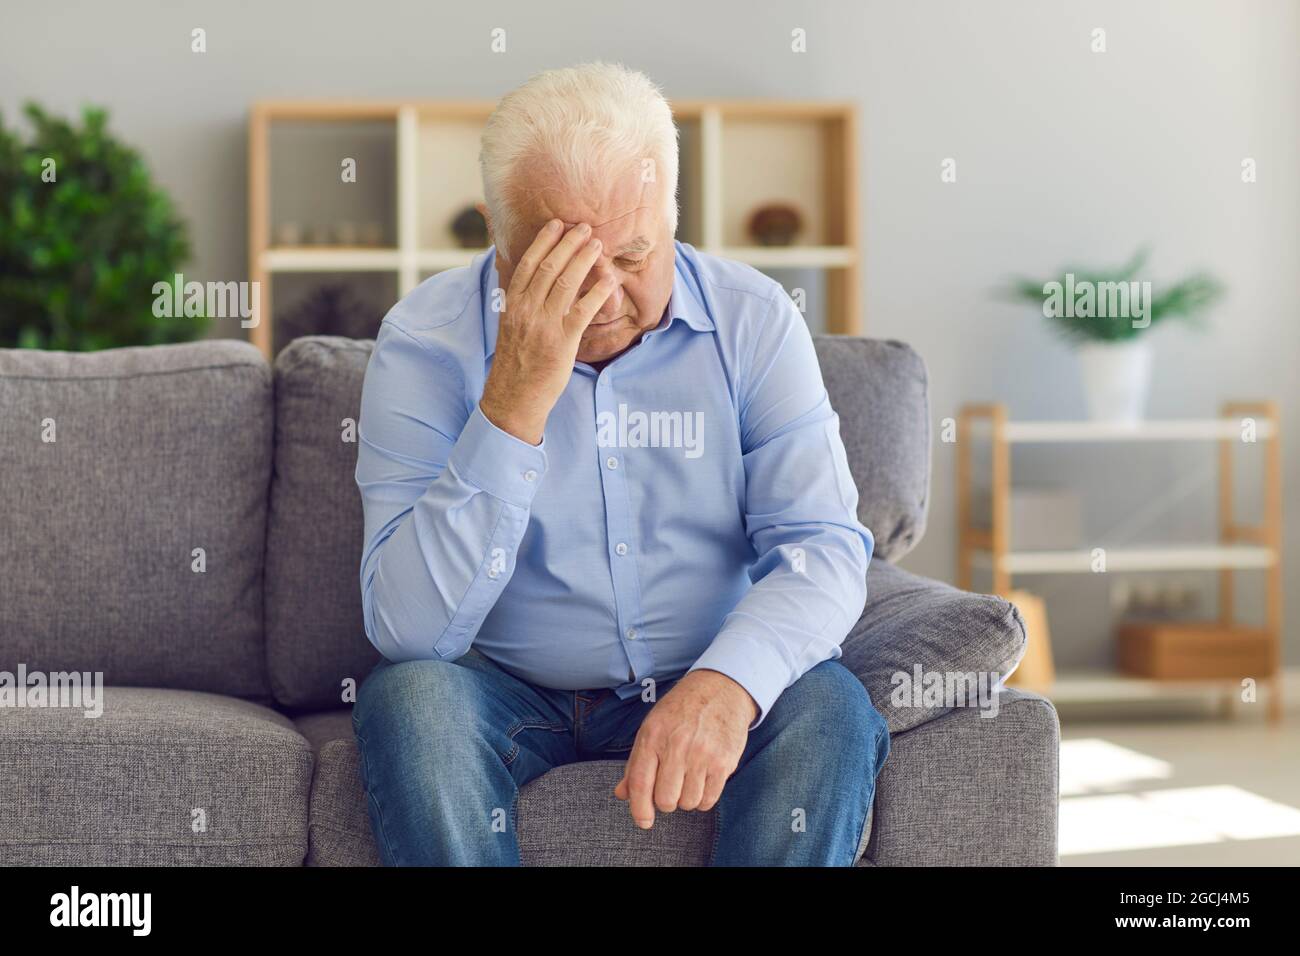 Homme âgé assis sur un canapé, se plaignant de la perte de sa femme ou souffrant de mauvais maux de tête Banque D'Images